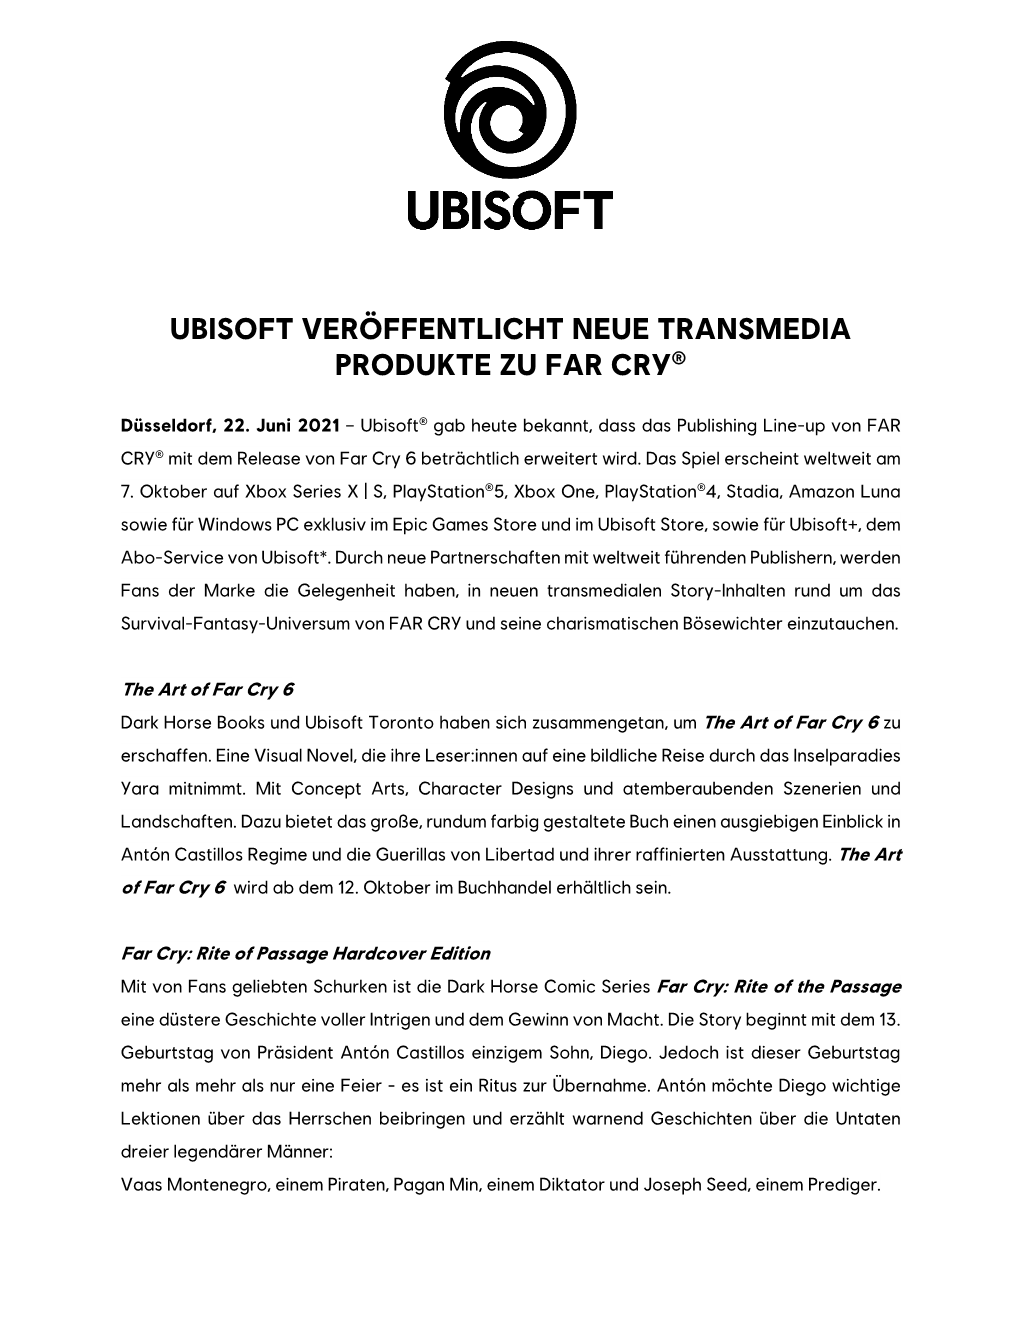 Ubisoft Veröffentlicht Neue Transmedia Produkte Zu Far Cry®